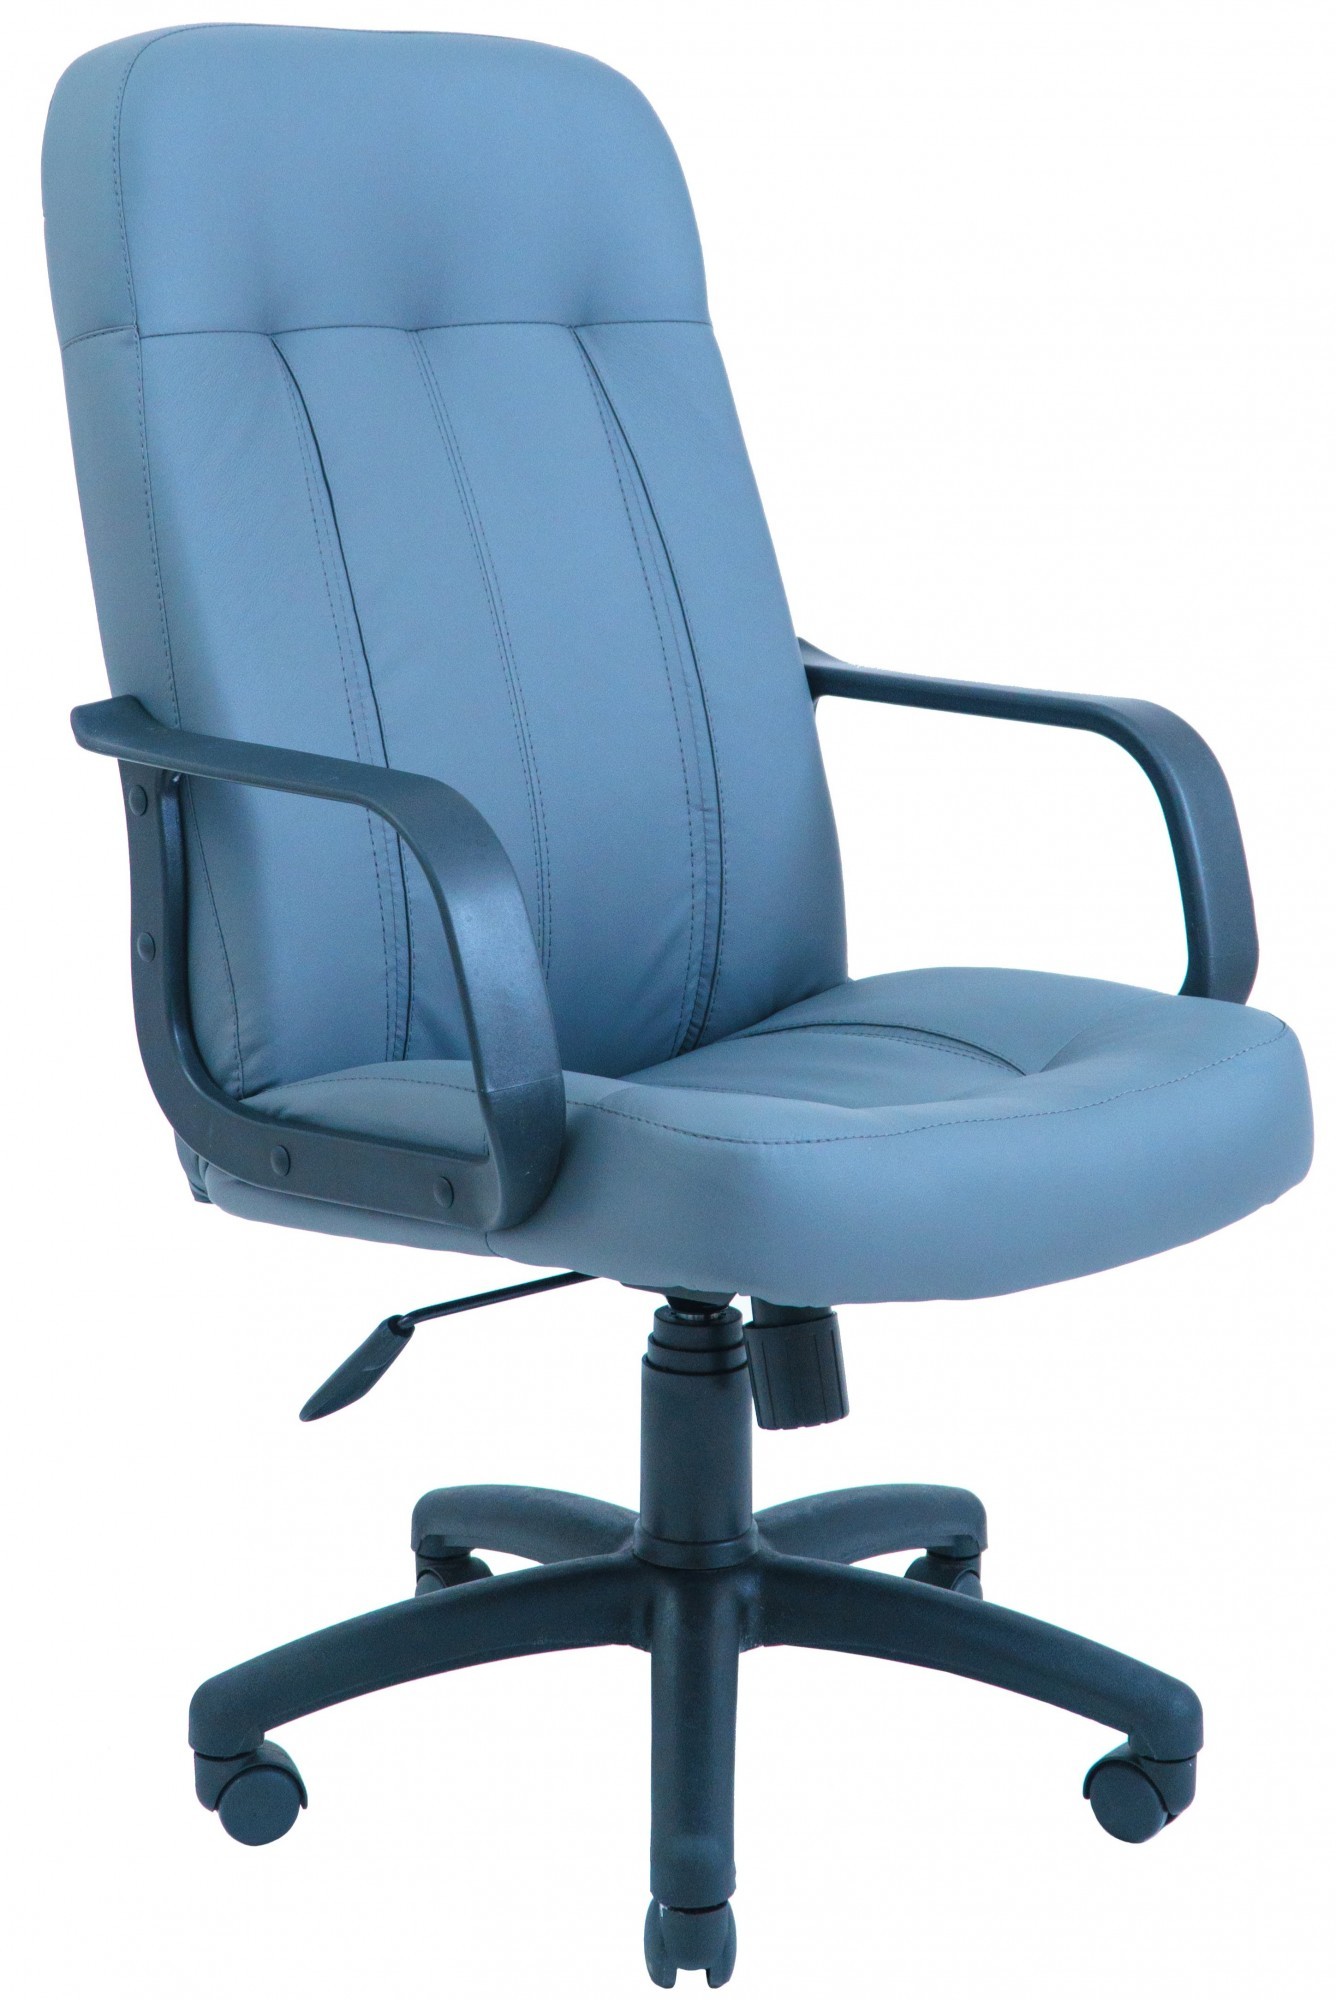 Офисное Кресло Руководителя Richman Бордо Флай 2220 Пластик М3 MultiBlock Голубое